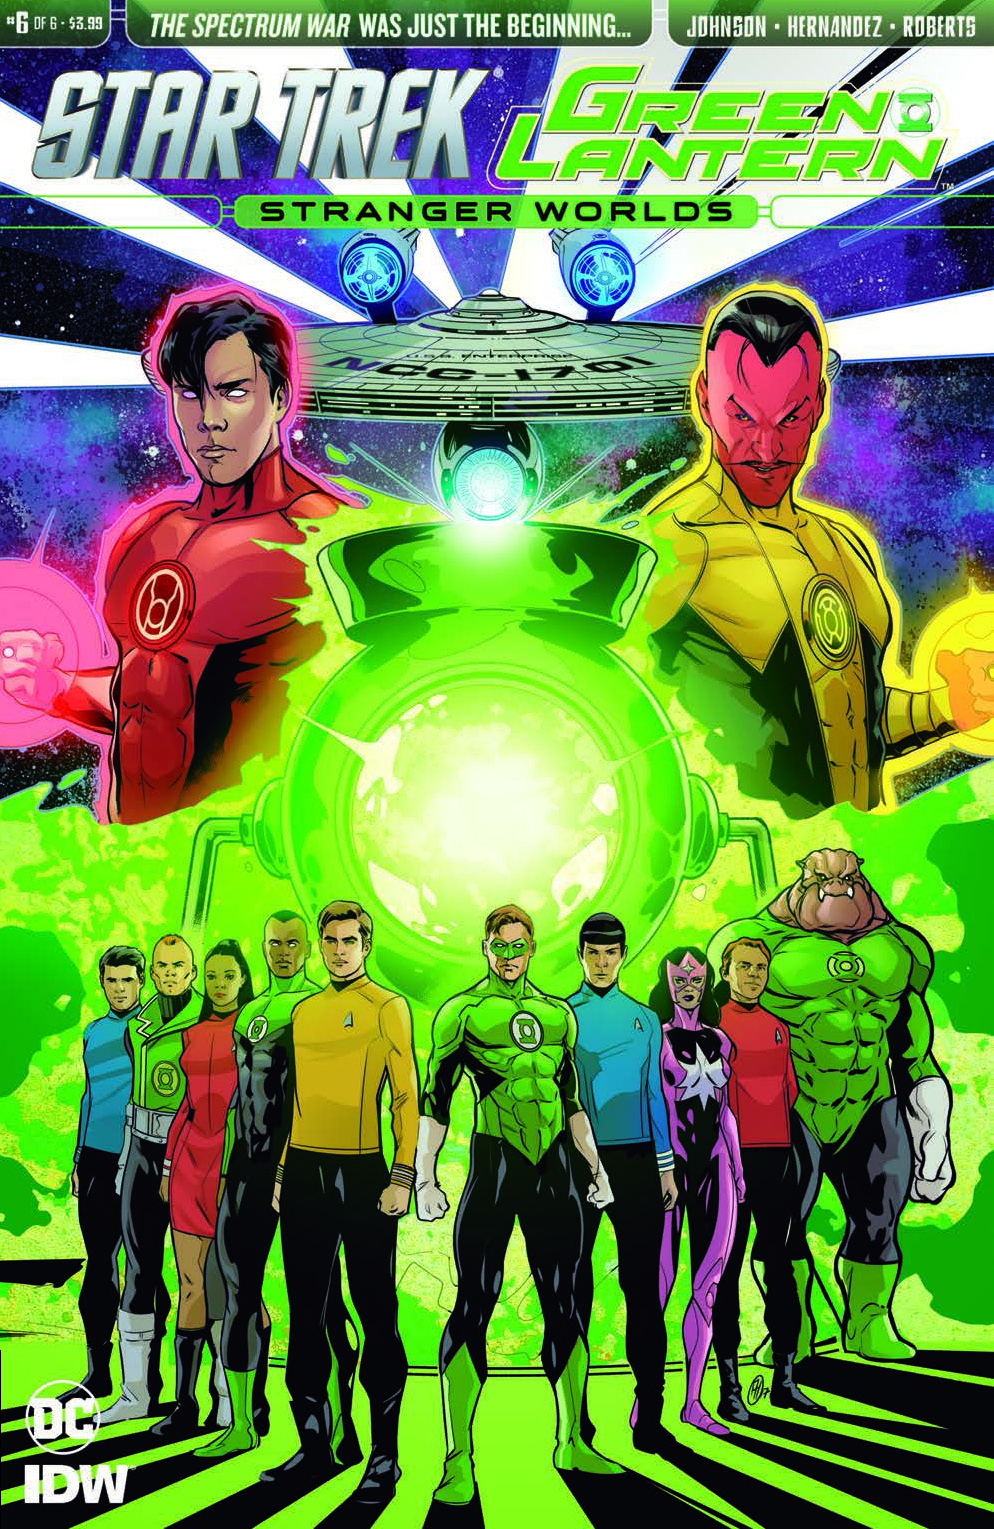 [EXCLUSIVE] IDW Preview: Star Trek/Green Lantern Vol 2 #6